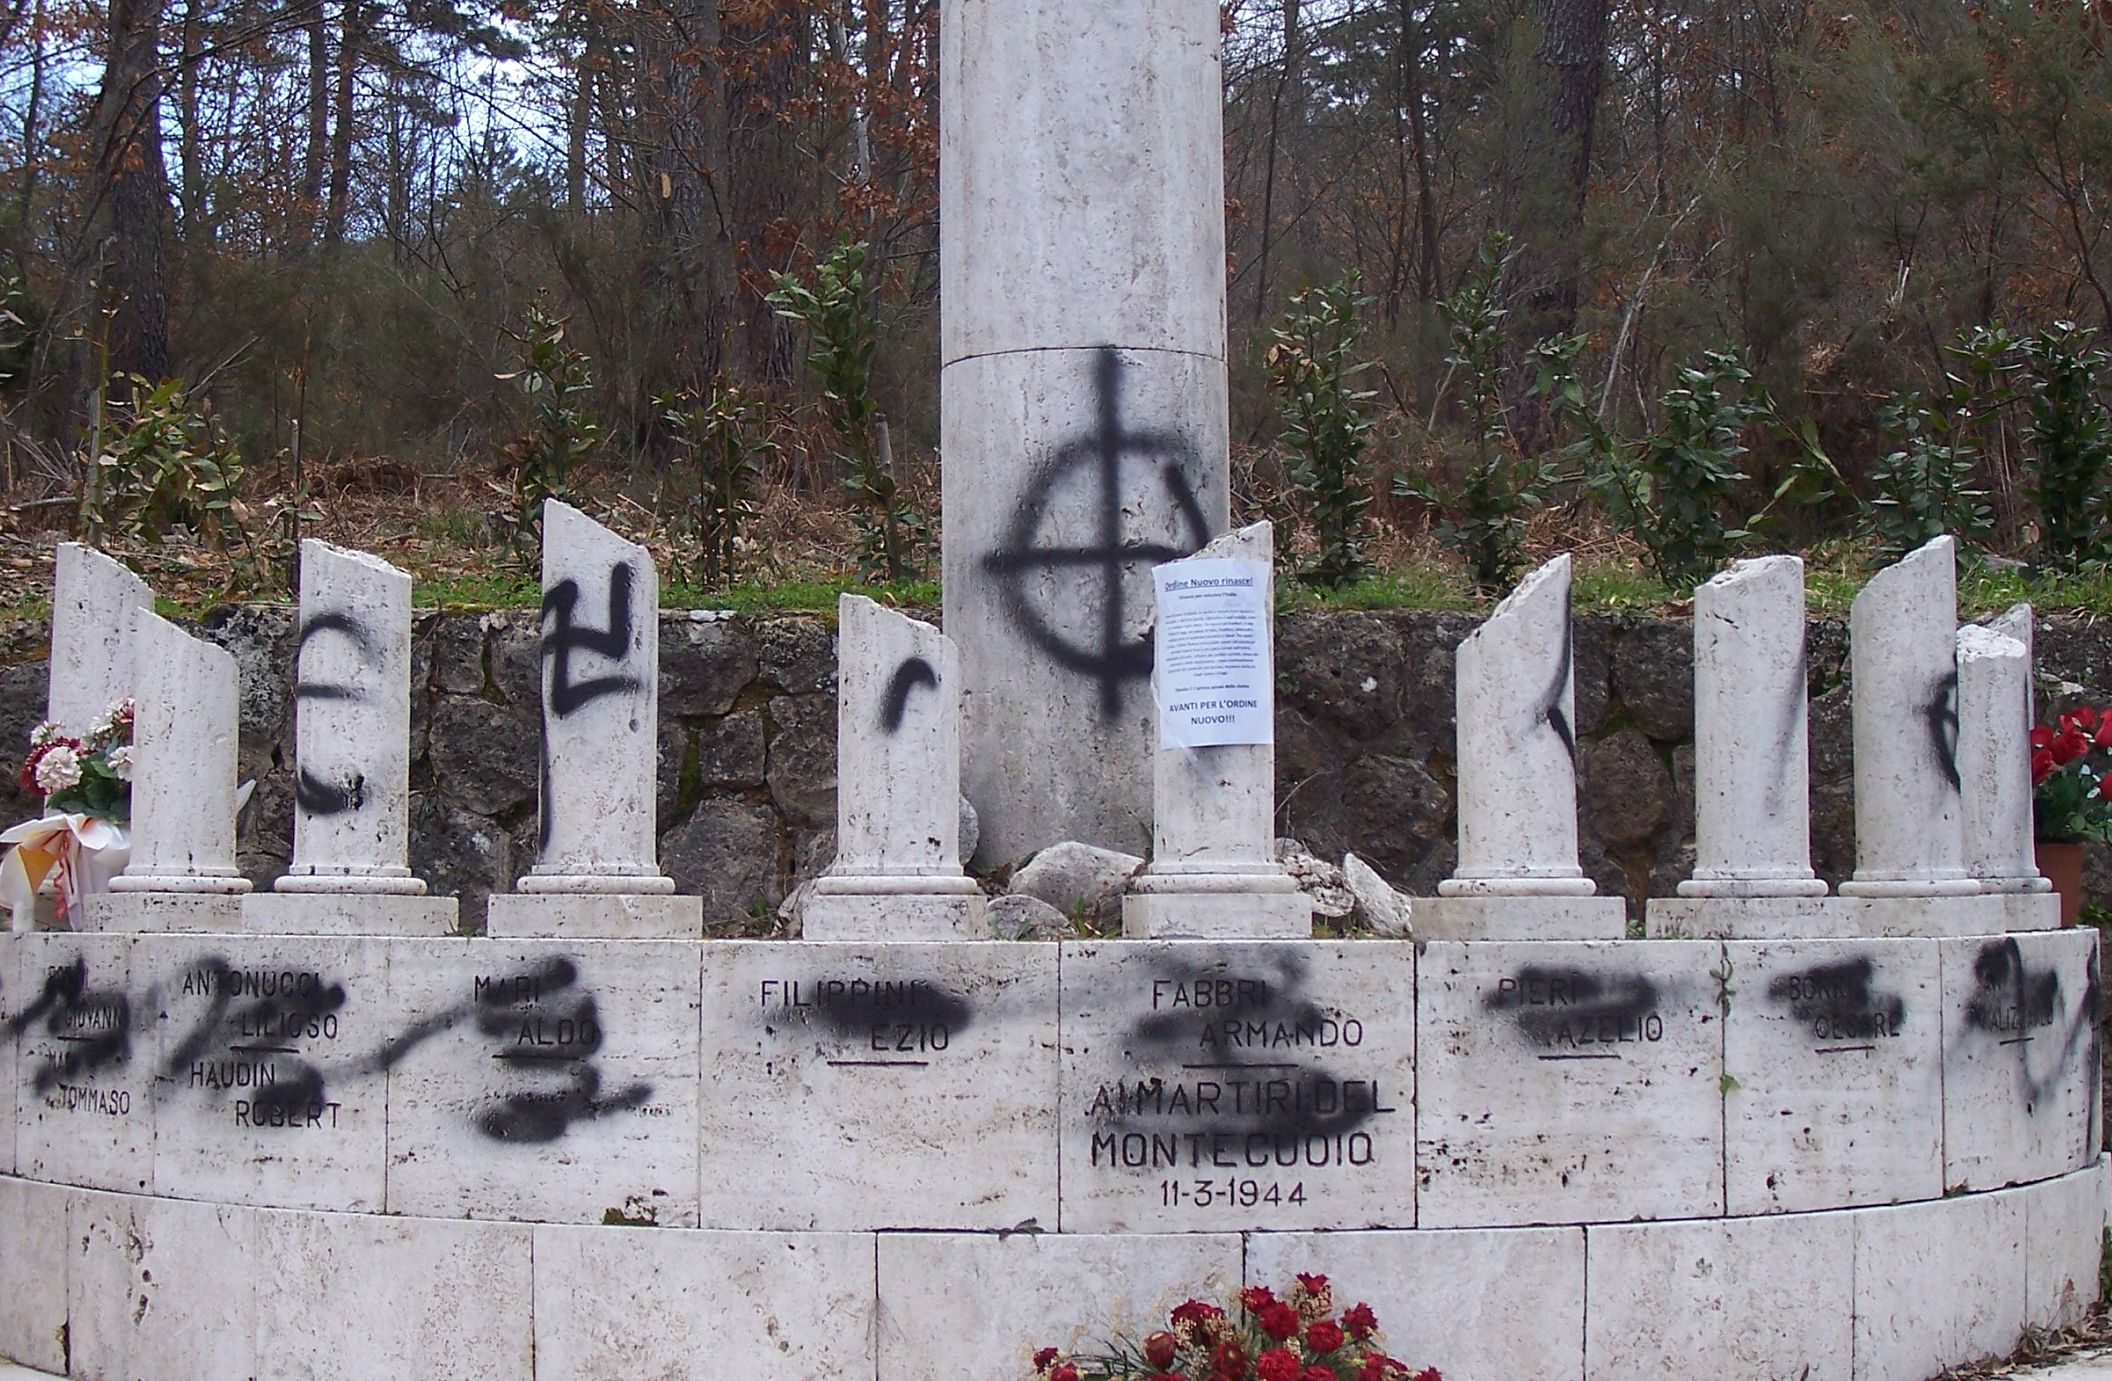 La Federazione di sinistra: "L’atto vandalico al monumento è estremamente preoccupante"